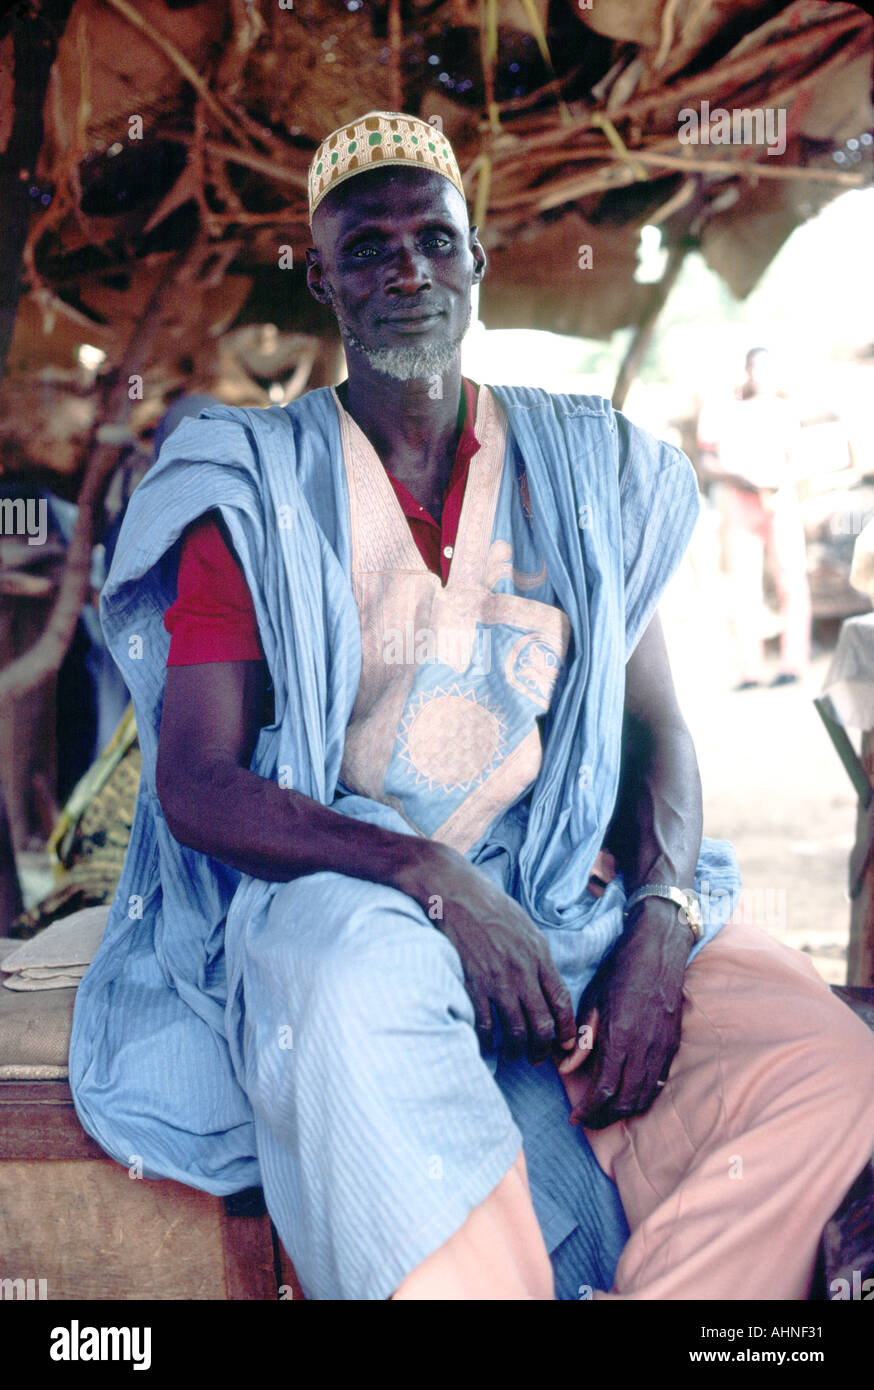 Merchant en costume traditionnel dans le marché de l'ancien Sahara Sahara ville de Gao au Mali, Afrique de l'ouest Banque D'Images